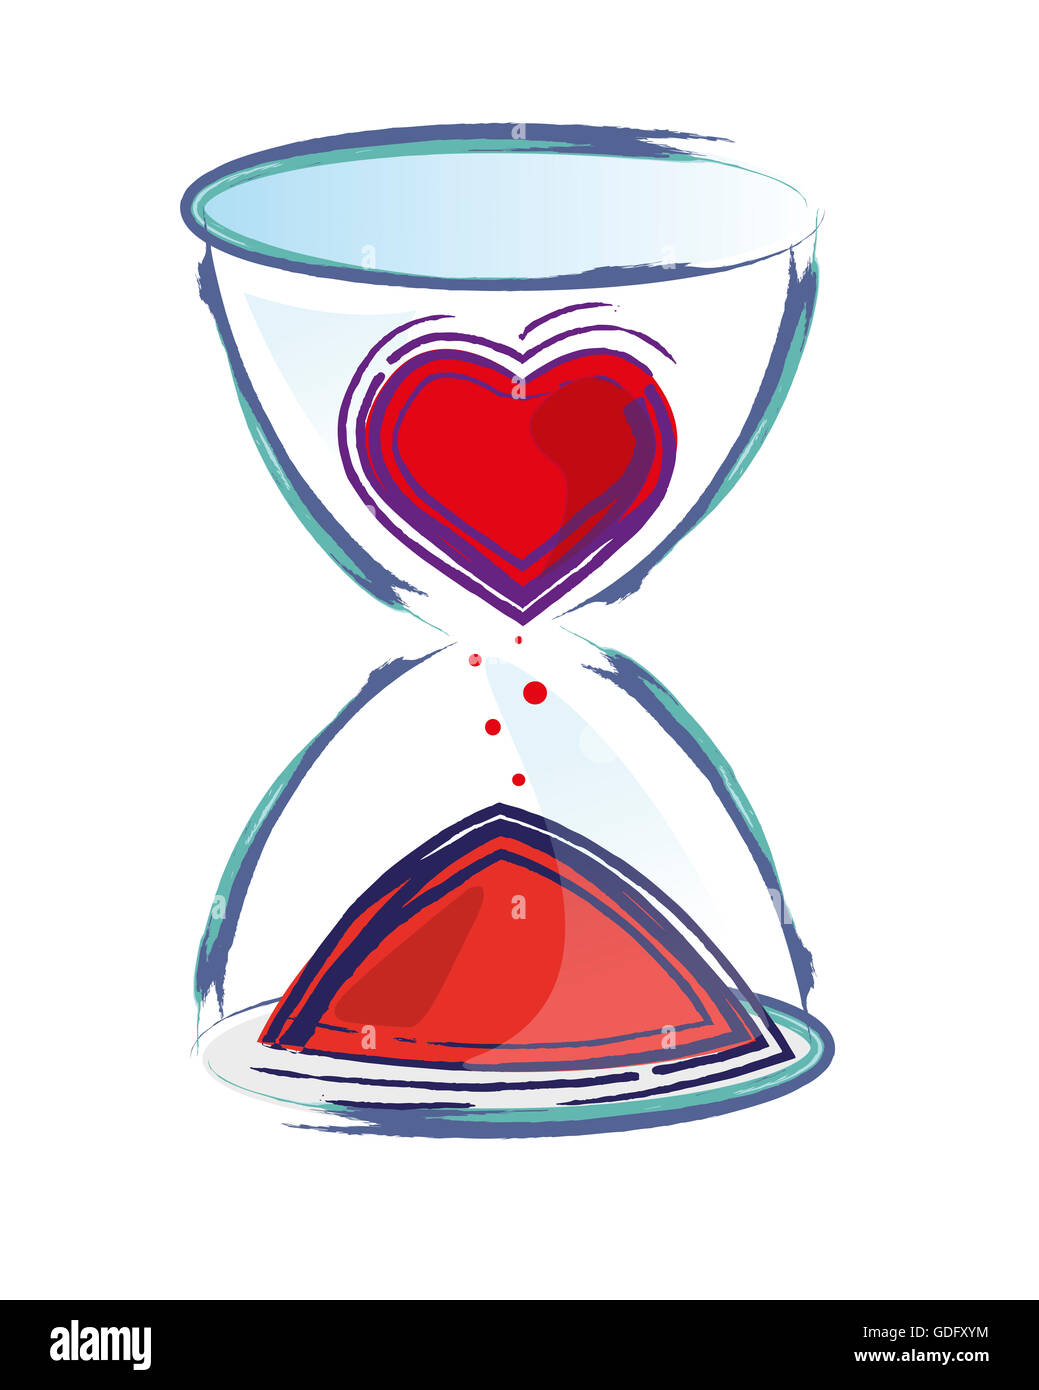 Ilustración dibujada a mano o un dibujo de un reloj de arena y un corazón  Fotografía de stock - Alamy